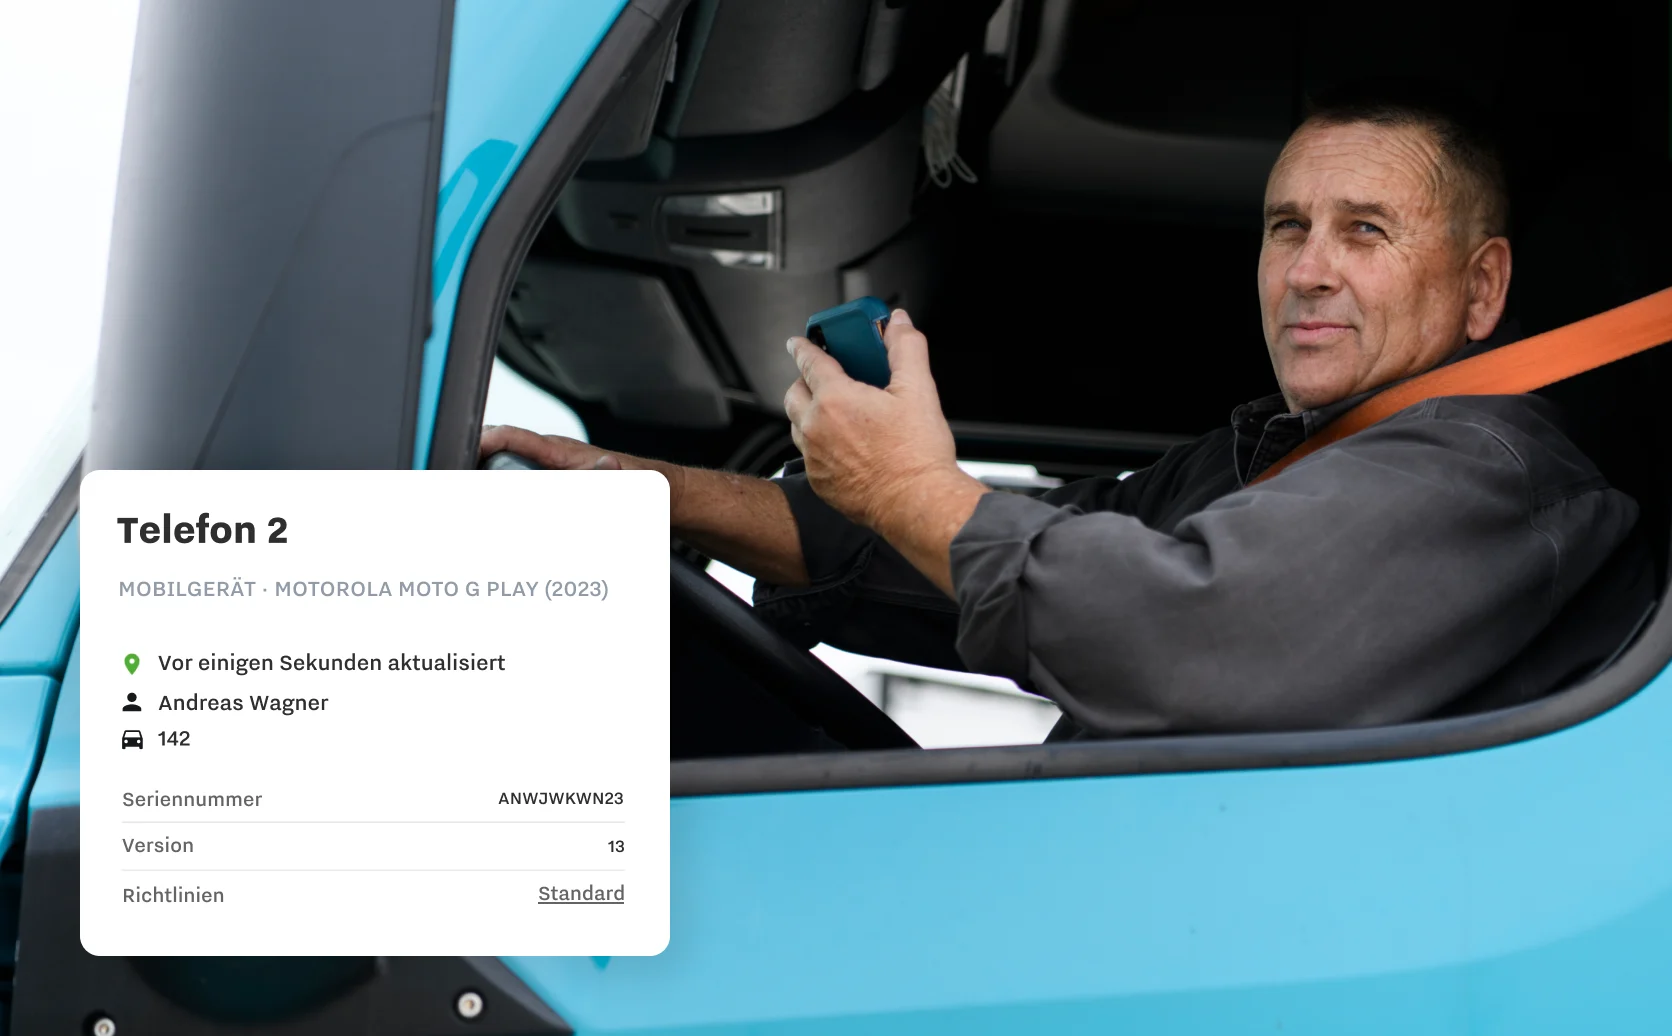 Bild von Fahrer, der ein Gerät hält, mit Infos aus dem Dashboard von Samsara Mobile, wie Fahrer, Fahrzeug und Seriennummer